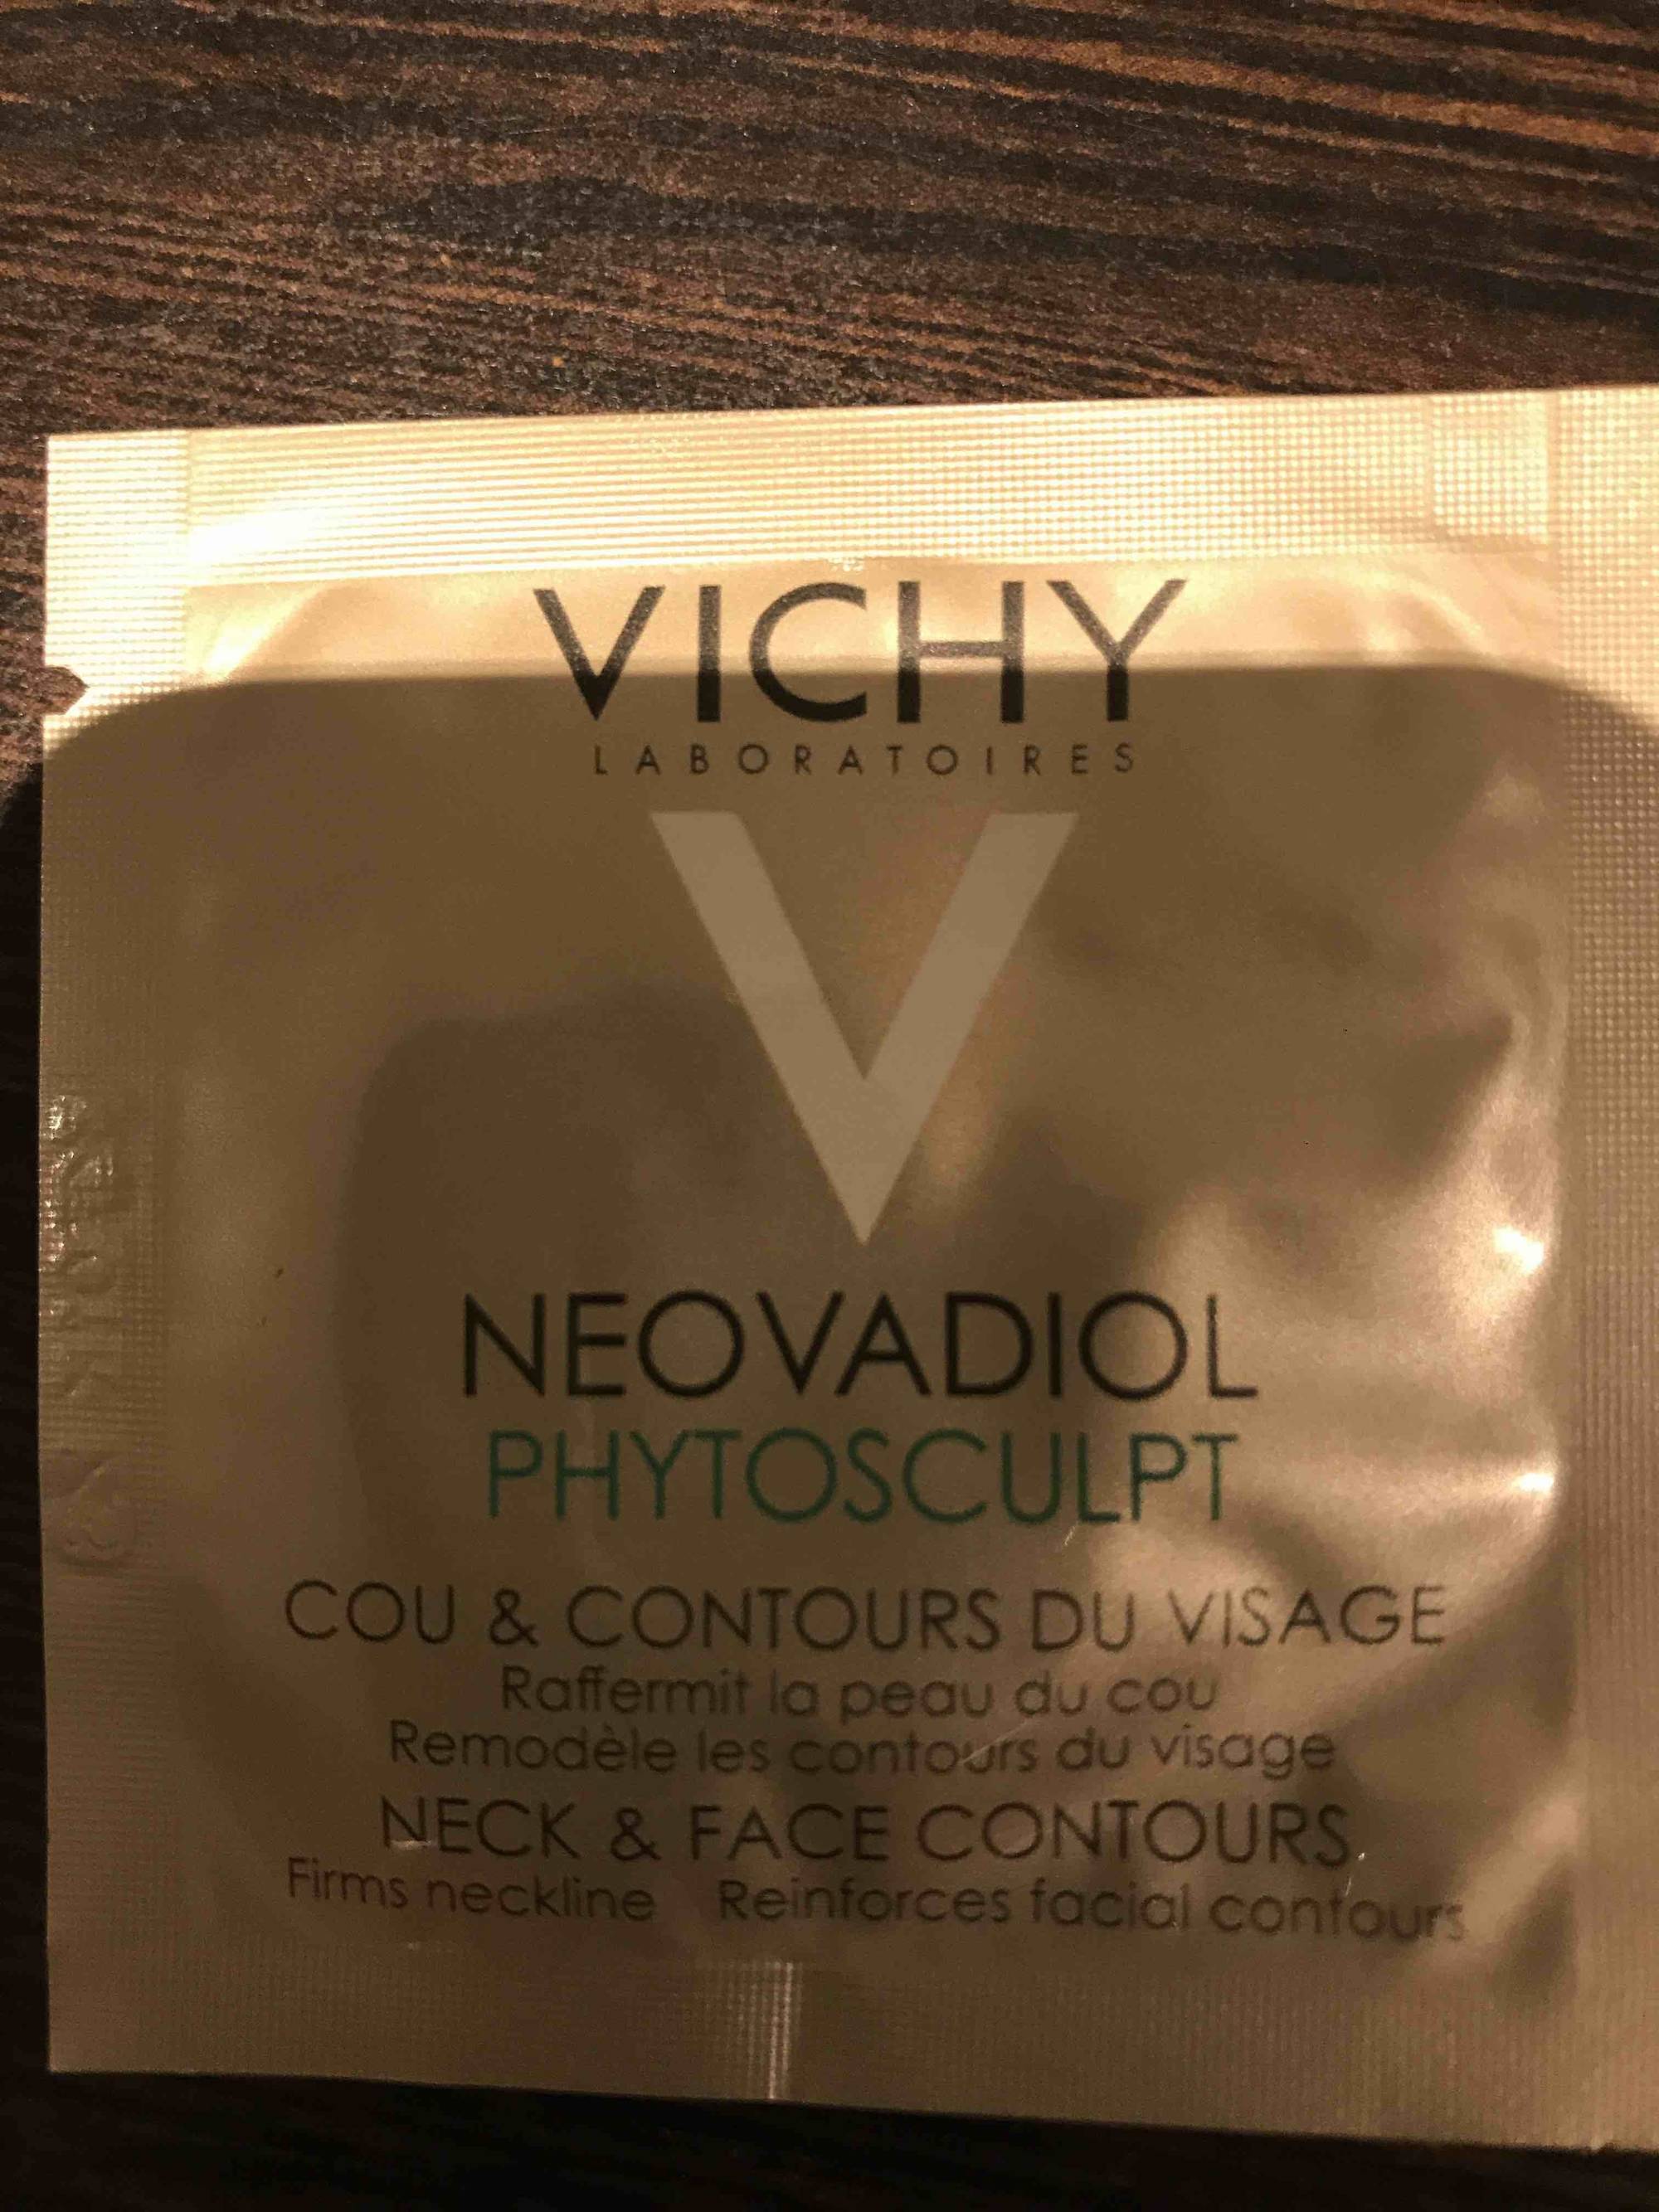 VICHY - Neovadiol - Phytosculpt, cou & contours du visage